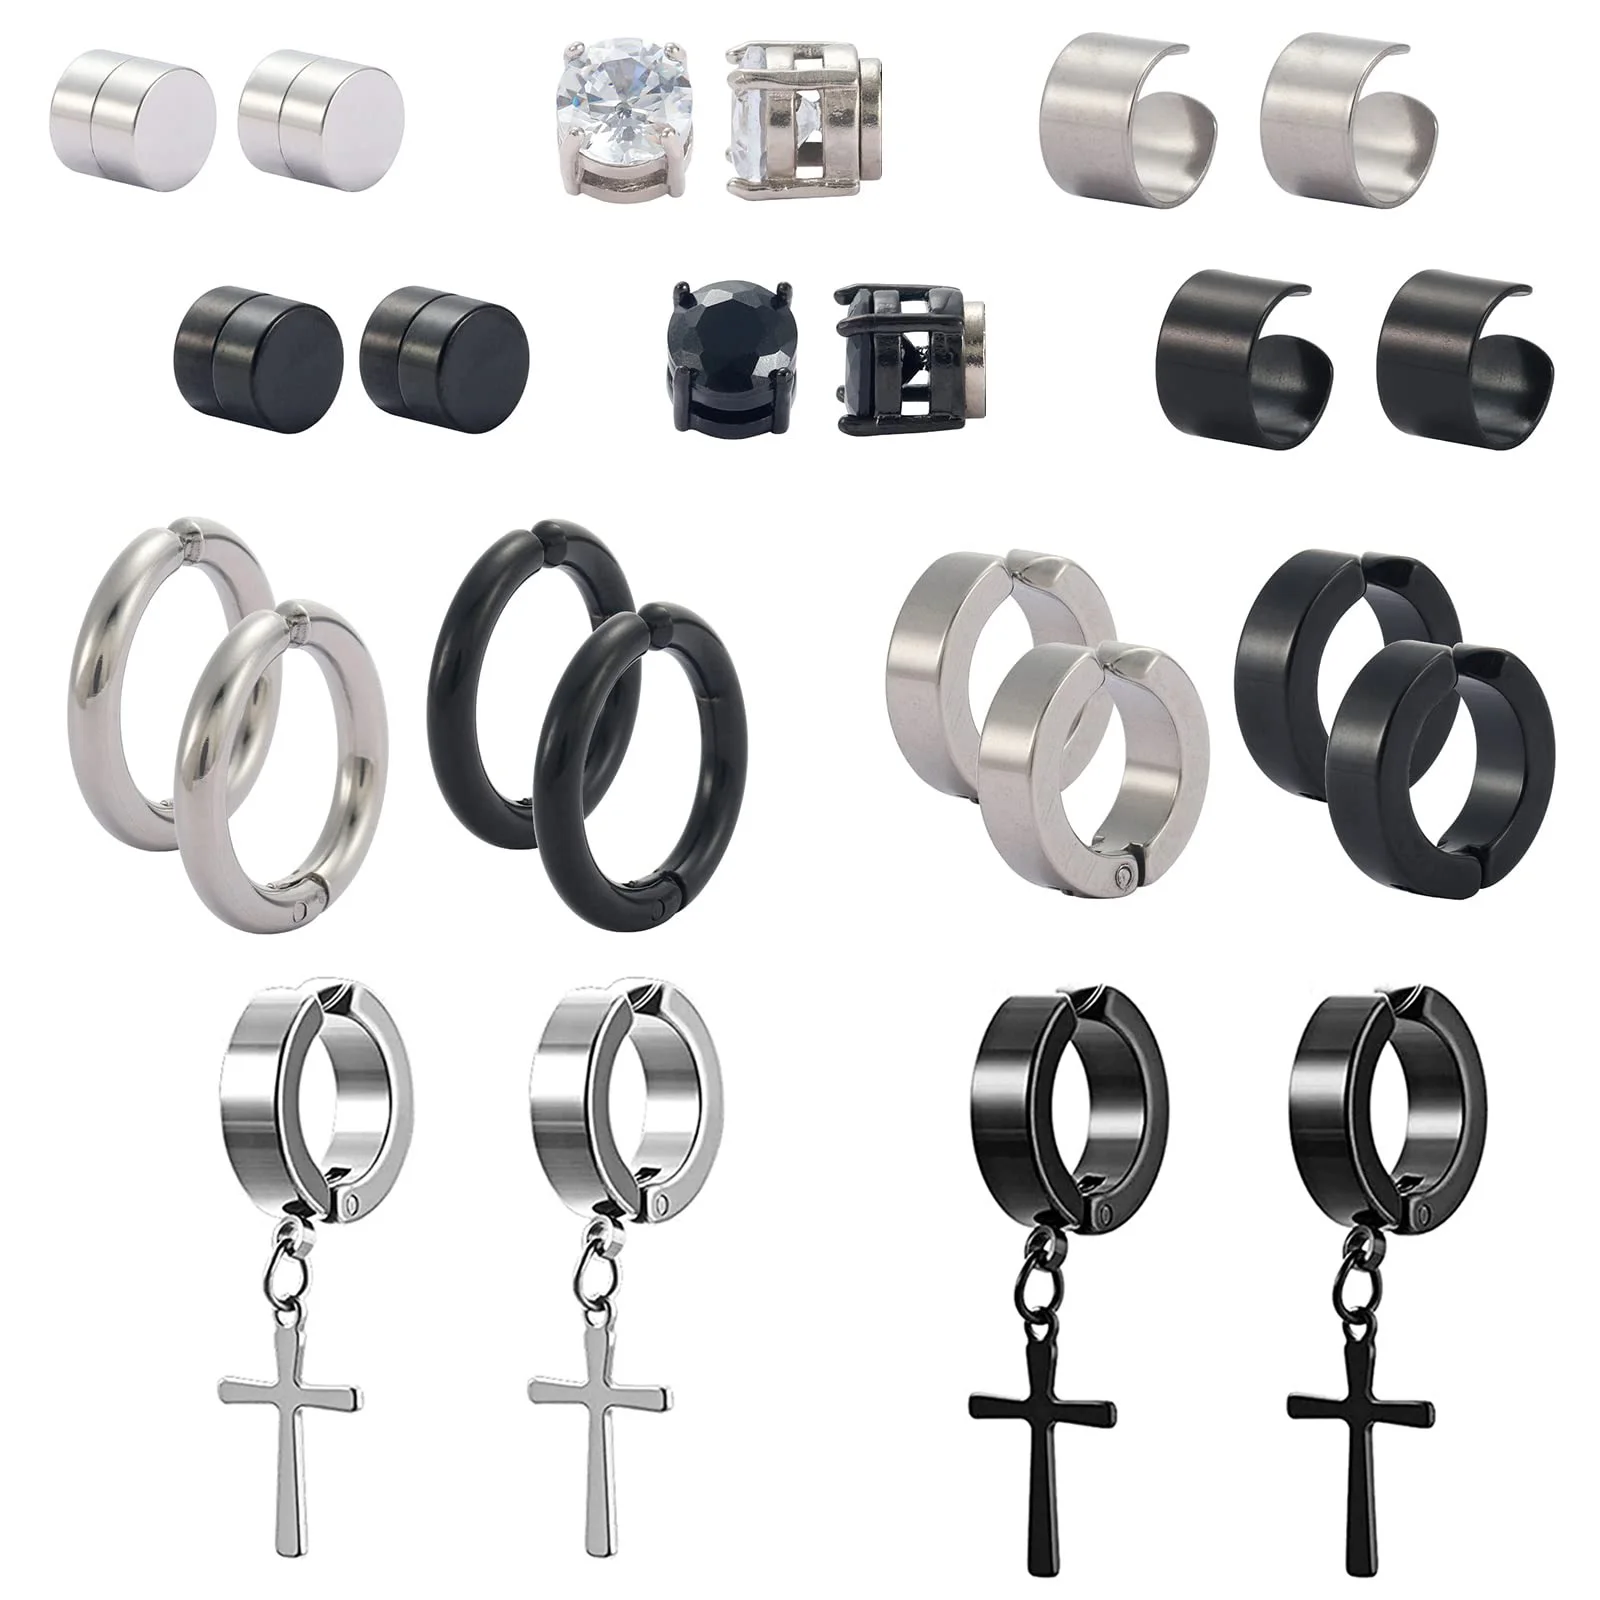 

1-12 Pairs Magnetic Non Piercing Stud Earrings Stainless Steel Clip on Dangle Cross Hoop Earrings Fake Gauge Cuff Earrings Set